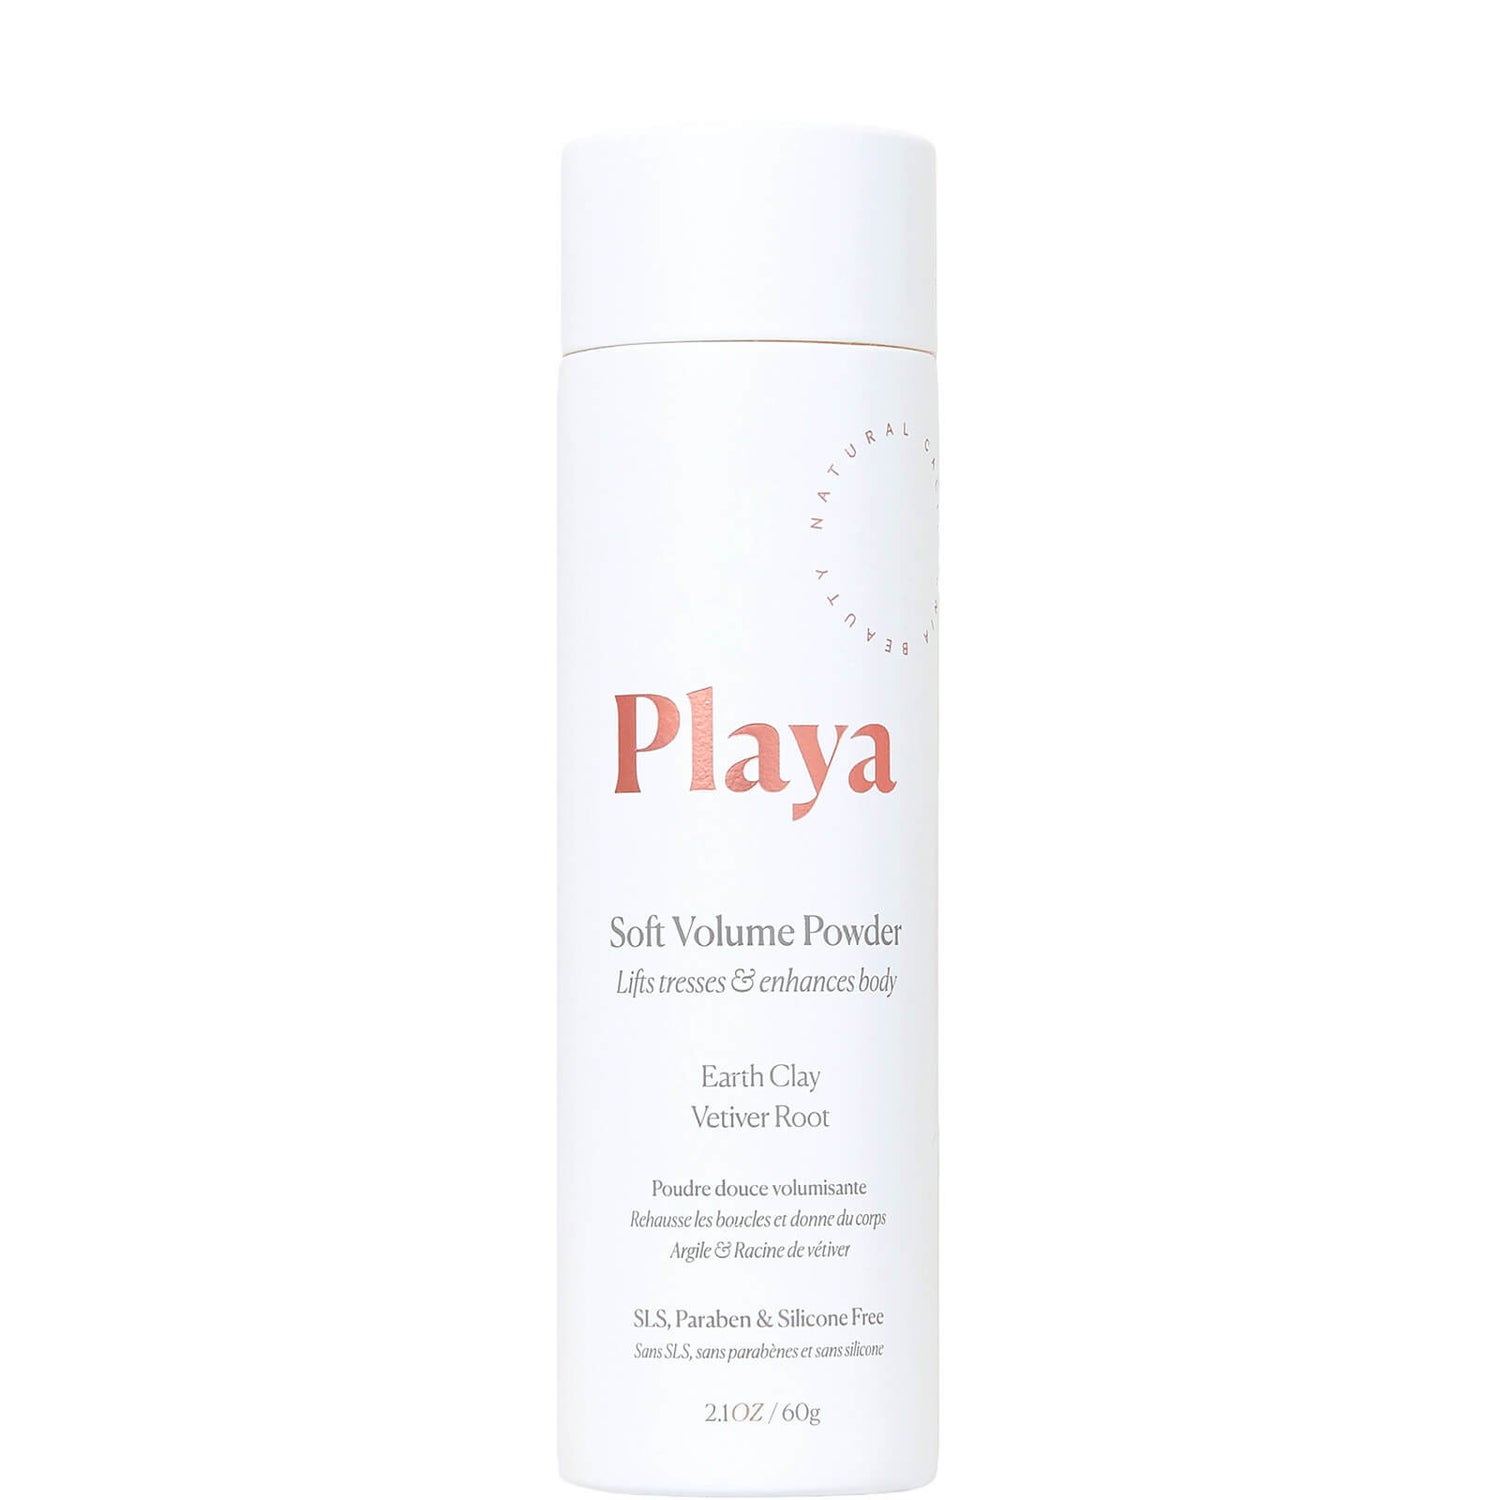 Playa Soft Volume Powder